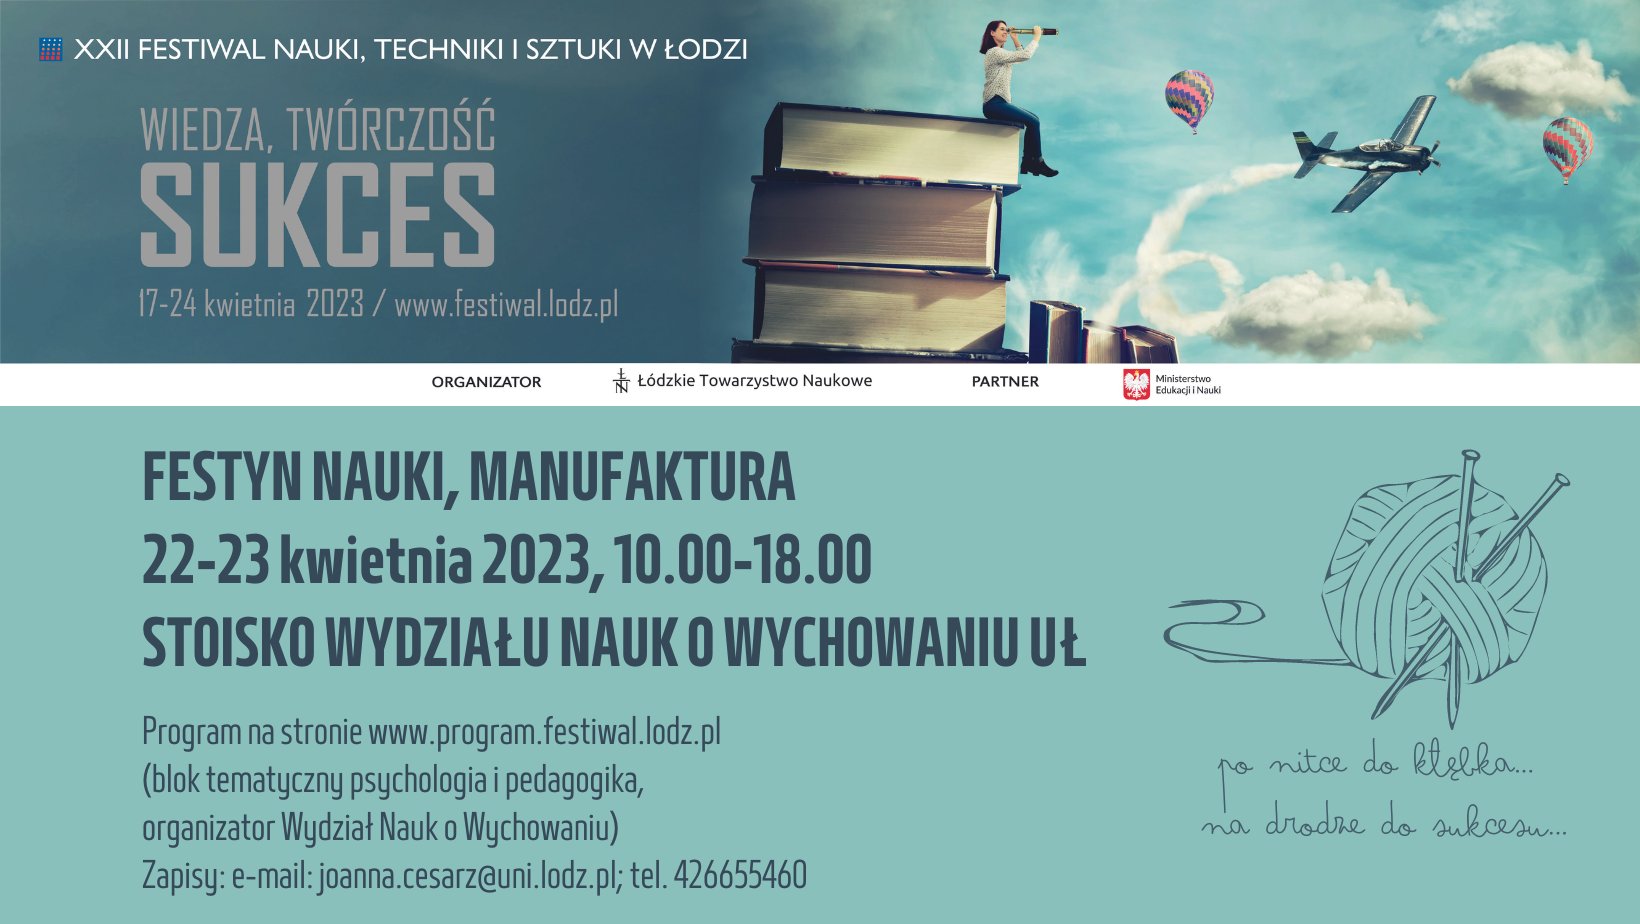 XXII Festiwal Nauki techniki i sztuki w łodzi